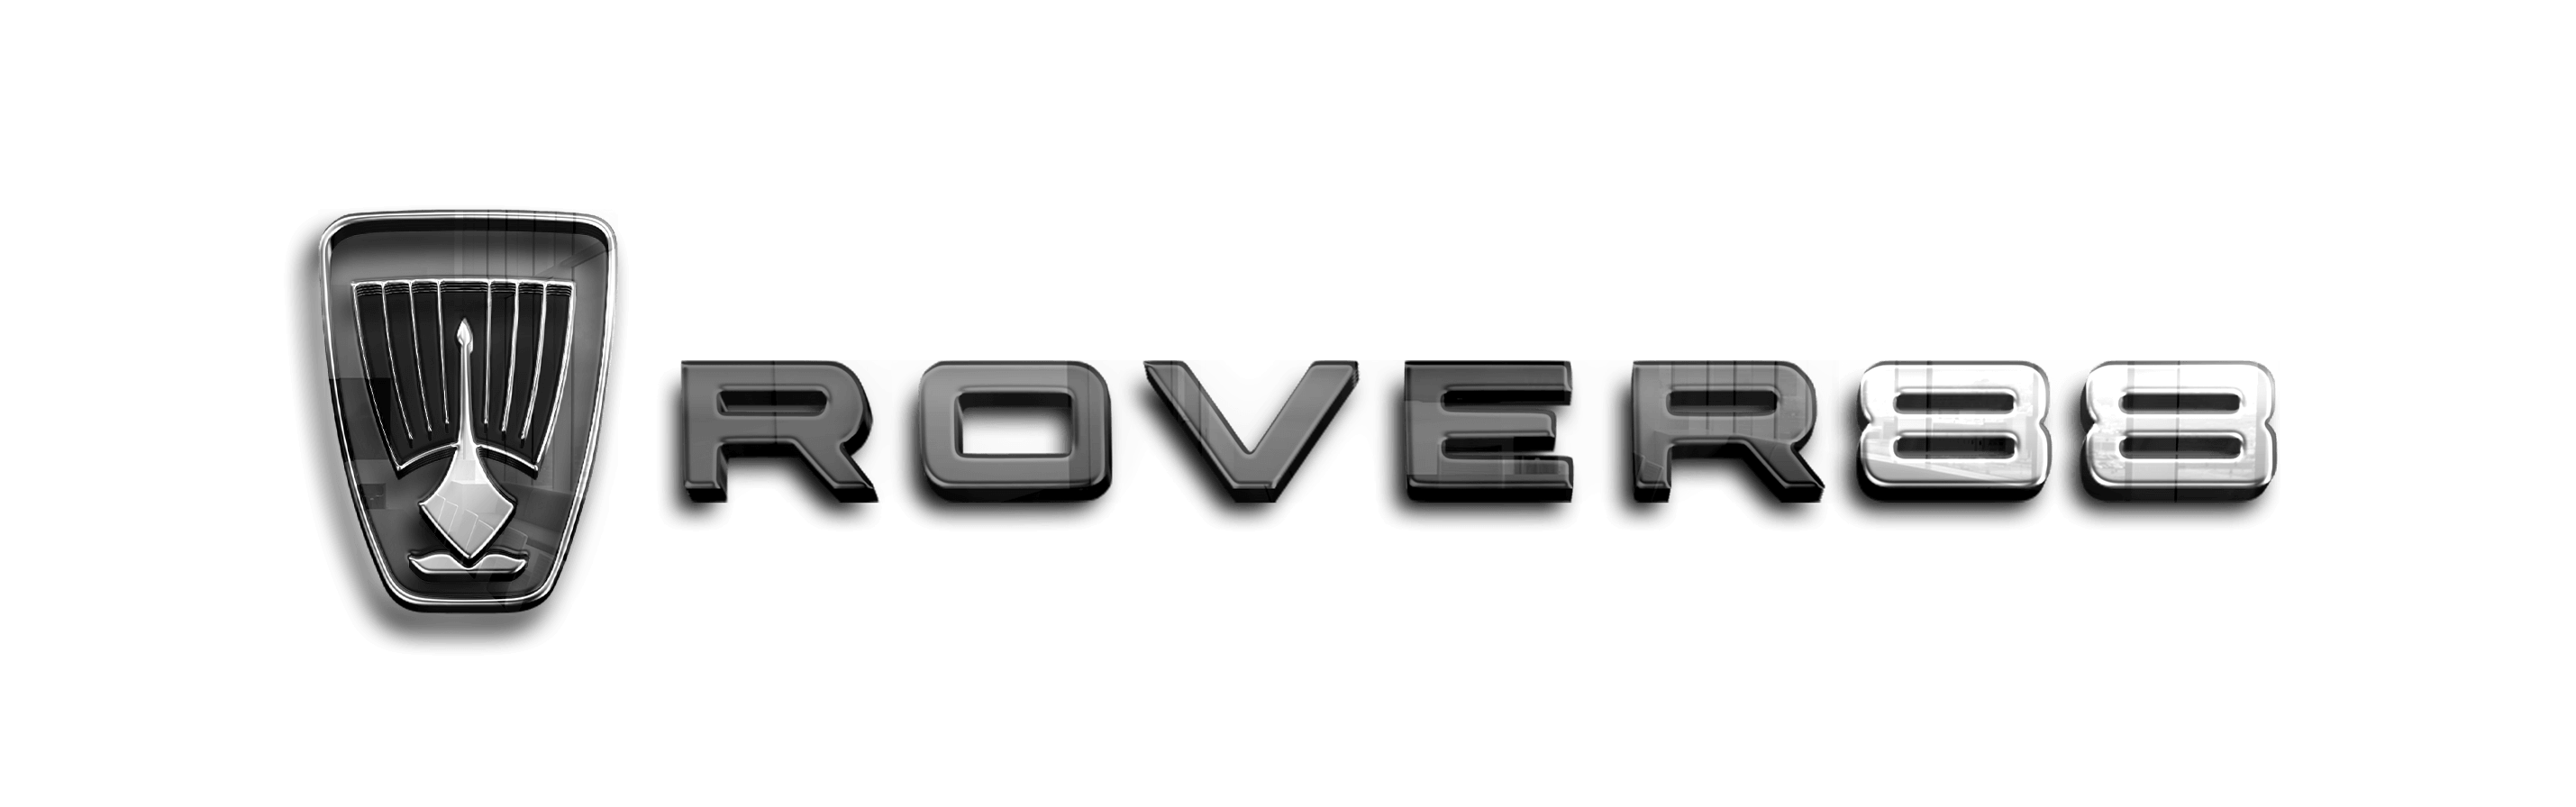 rrover88.com-logo